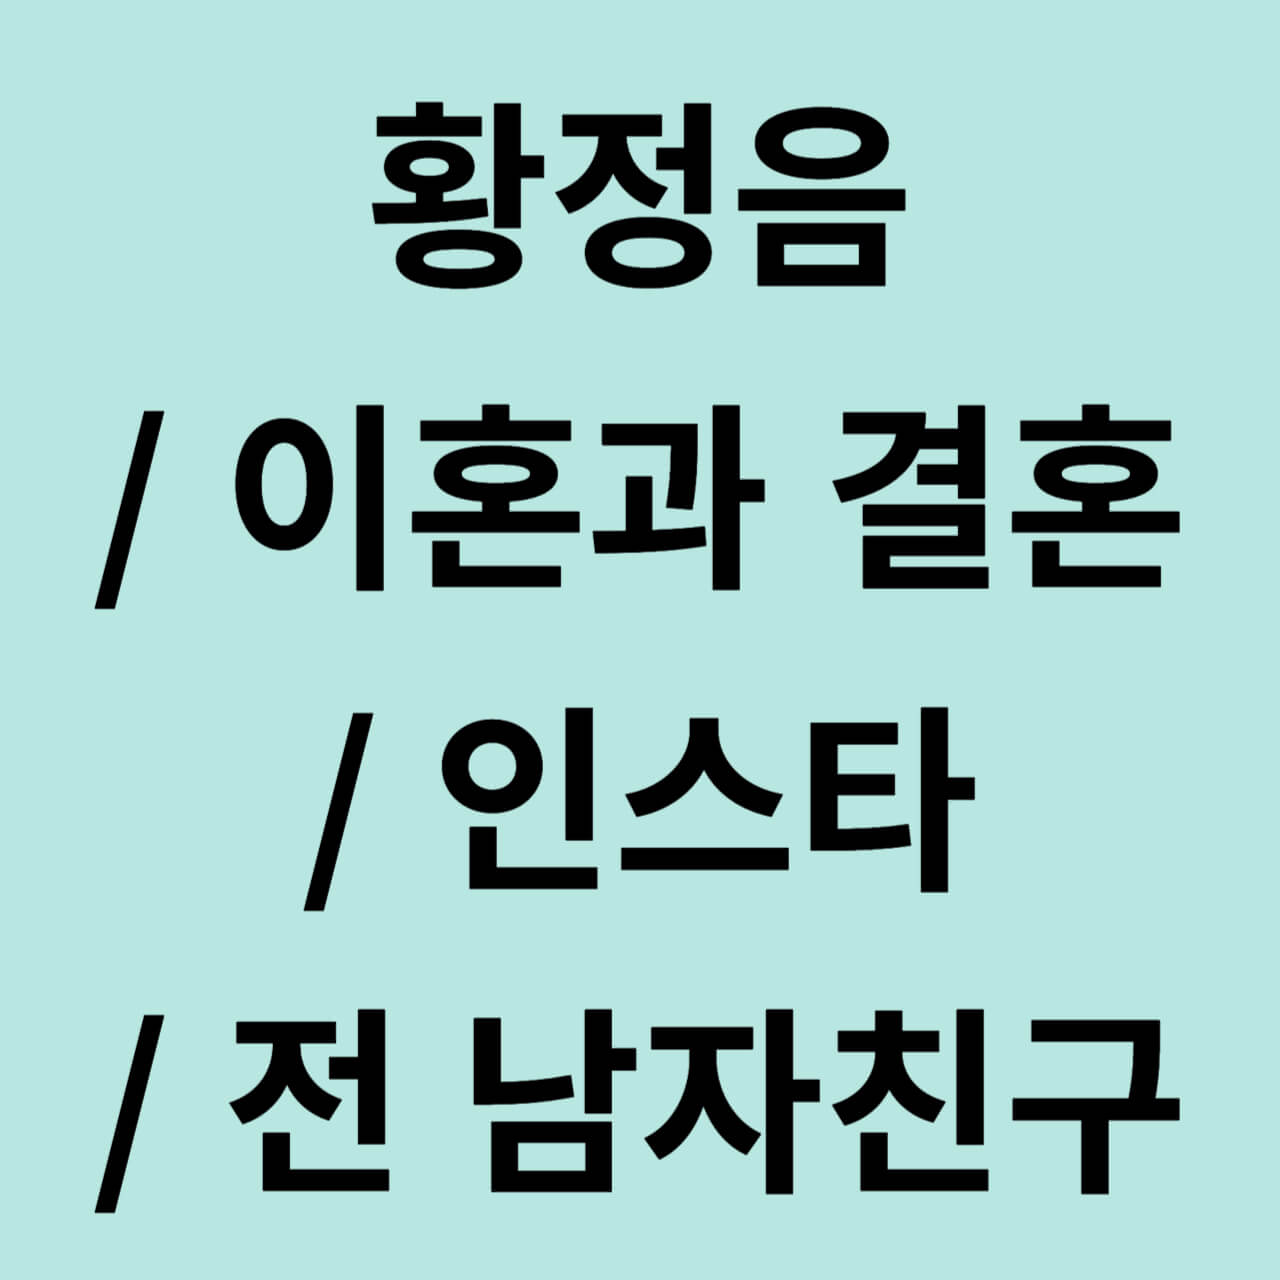 황정음/ 프로필/ 결혼/ 김용준/ 나이/ 드라마/ 이영돈/ 이혼 (+인스타)